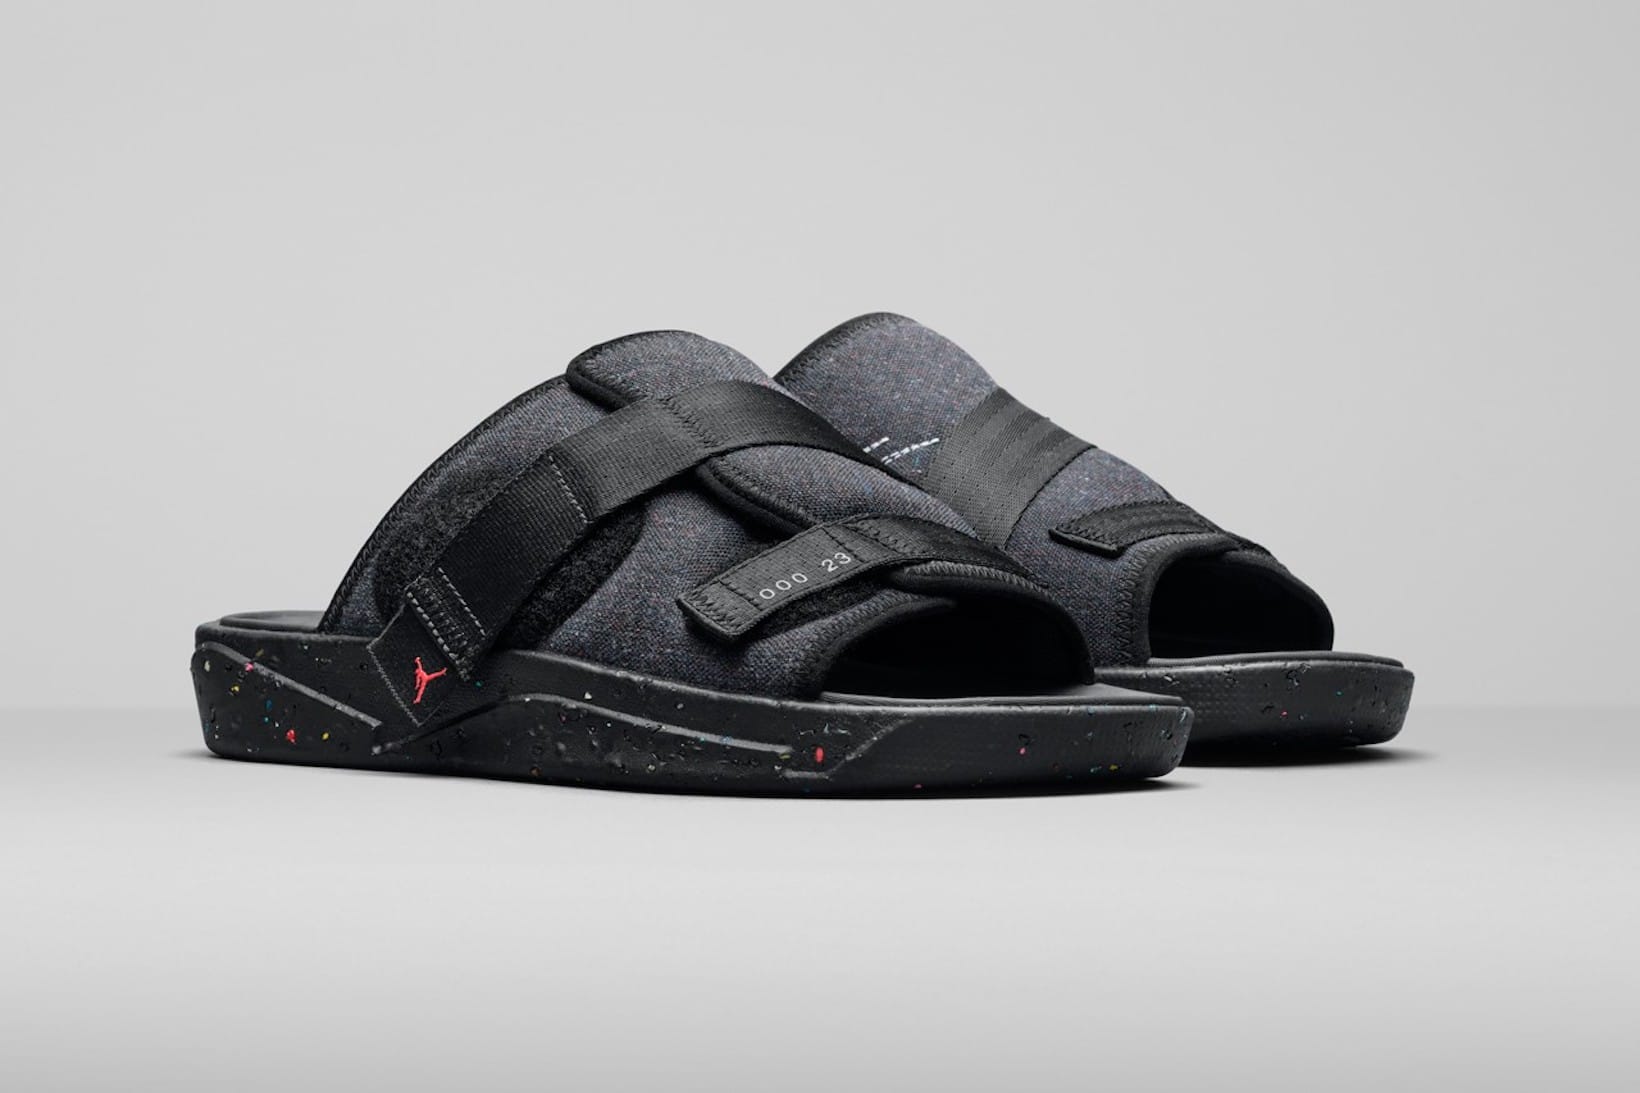 new jordan sandals 2020